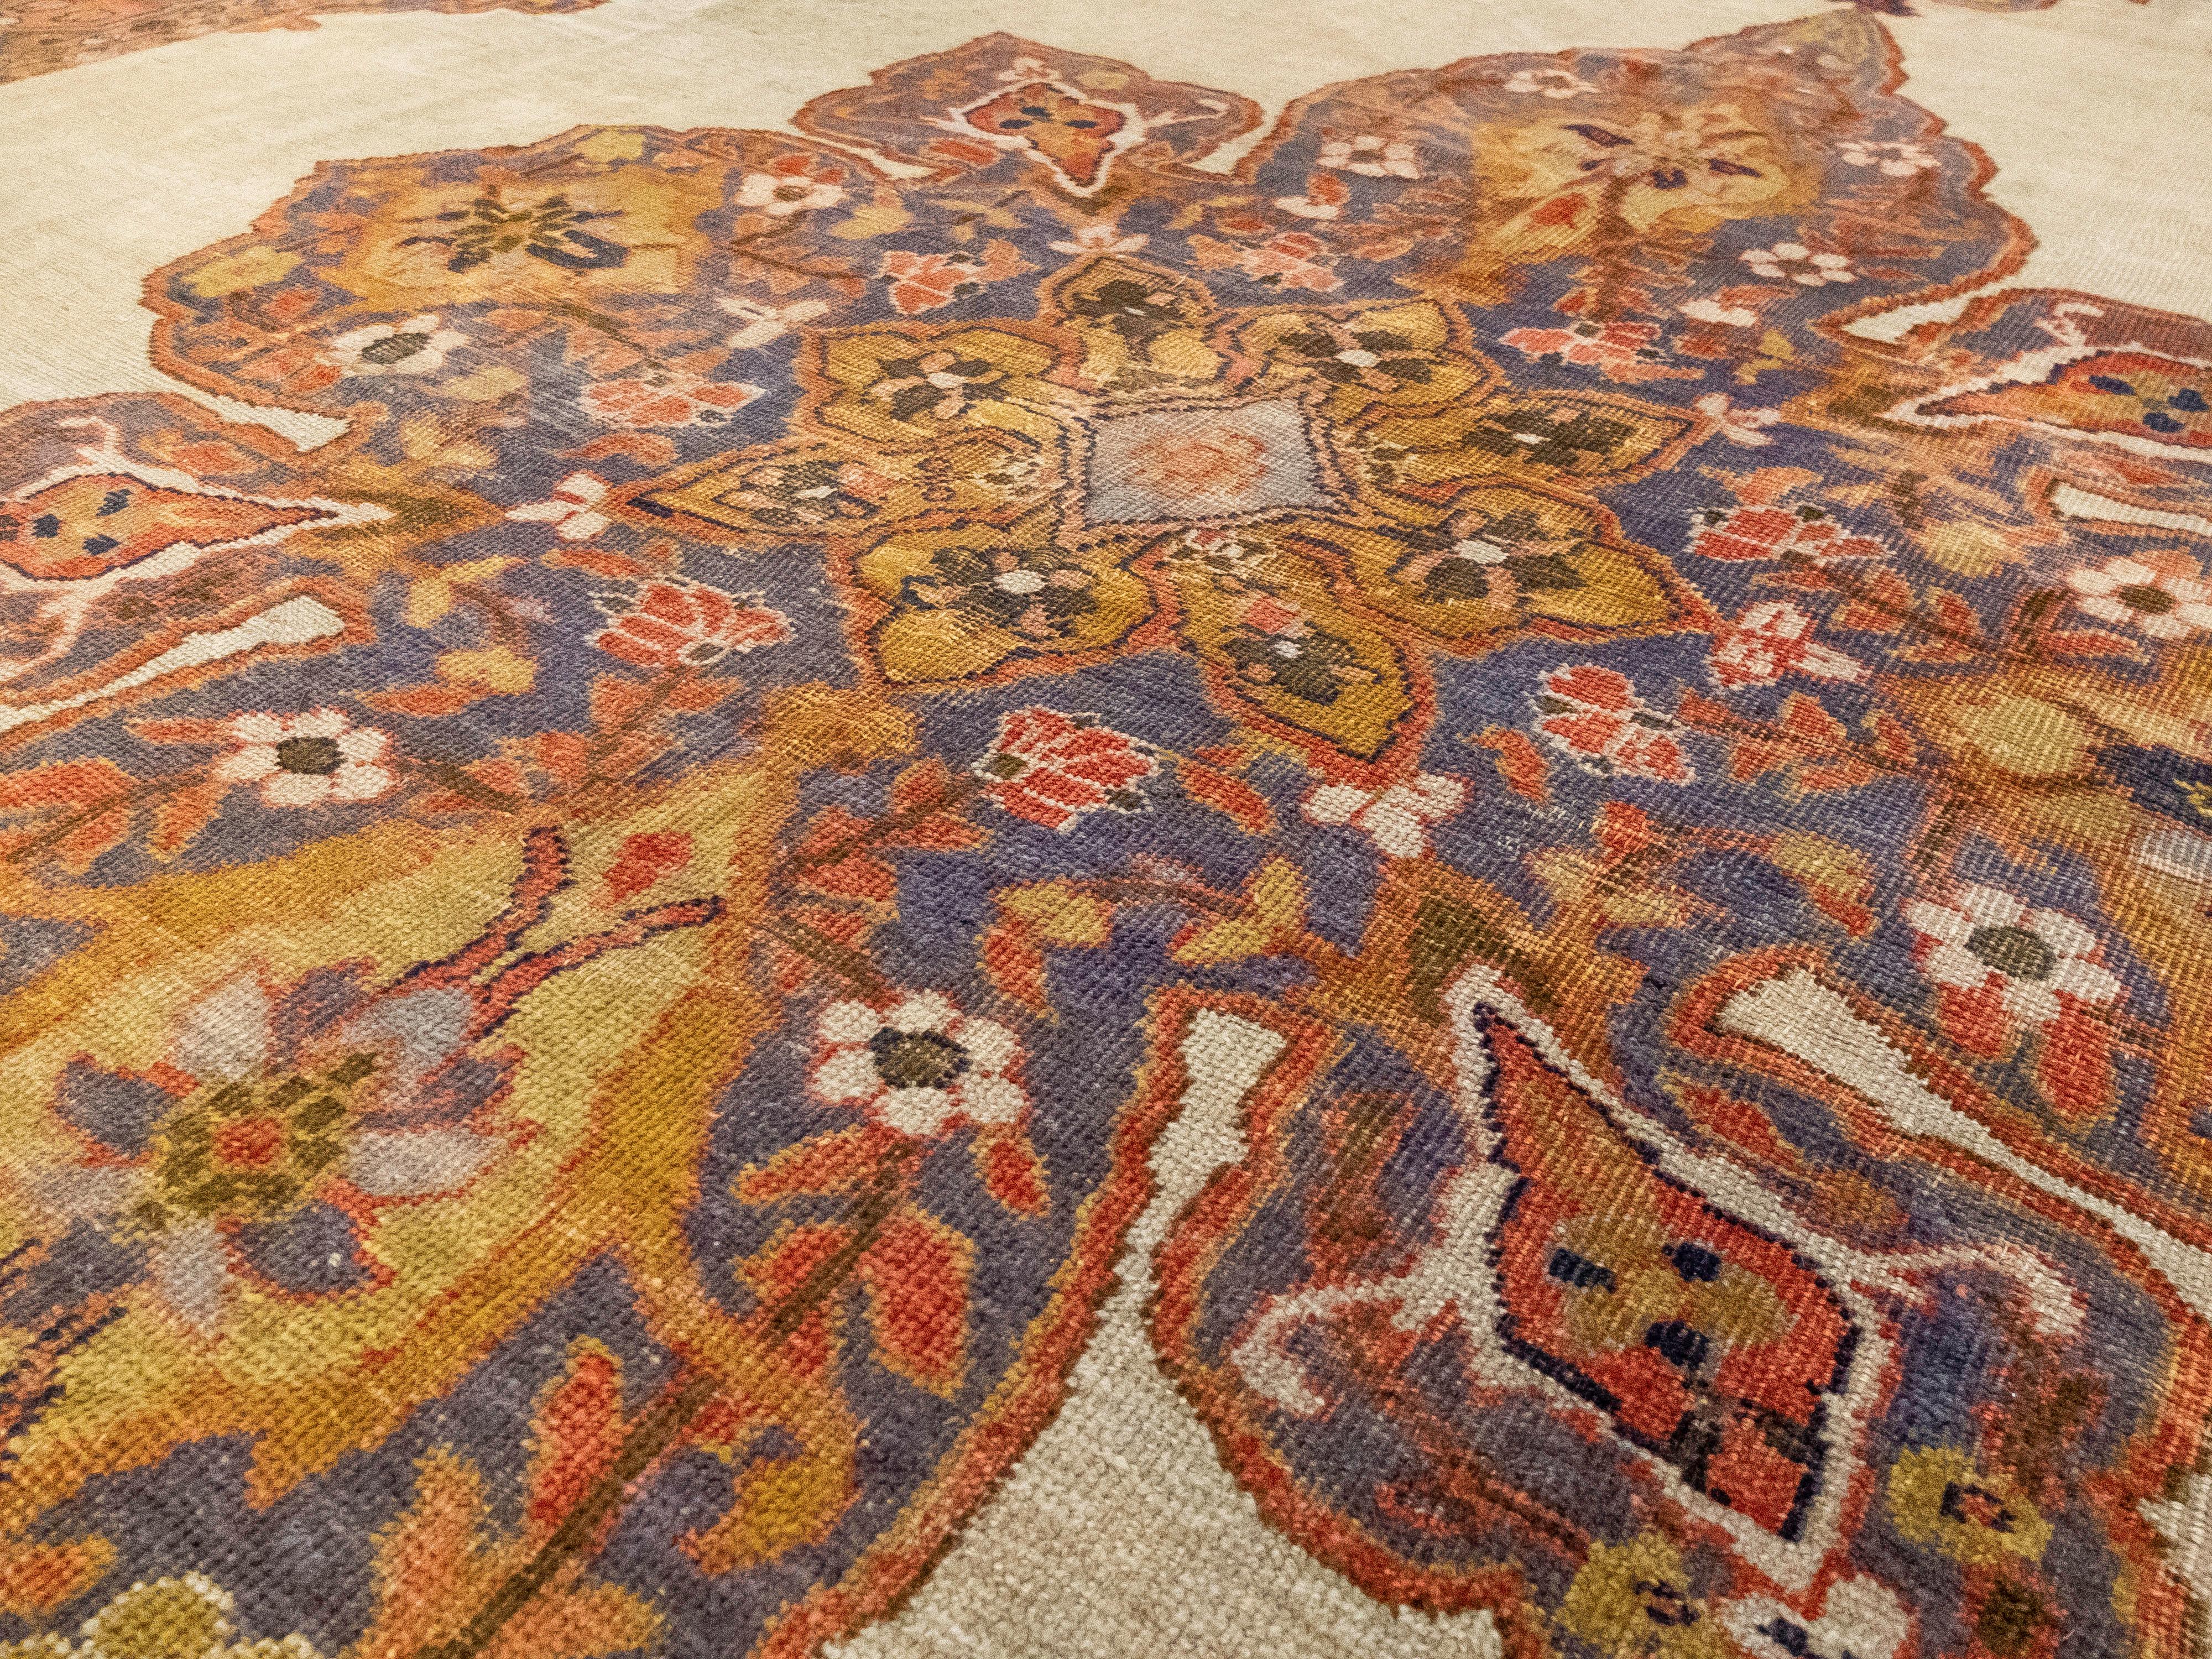 Il s'agit d'un tapis antique Ziegler Mahal aux motifs uniques. Les poils sont faits de laine filée à la main et la base est en coton. Il présente la caractéristique traditionnelle du Ziegler Mahal, à savoir un grand centre floral orné, entouré de